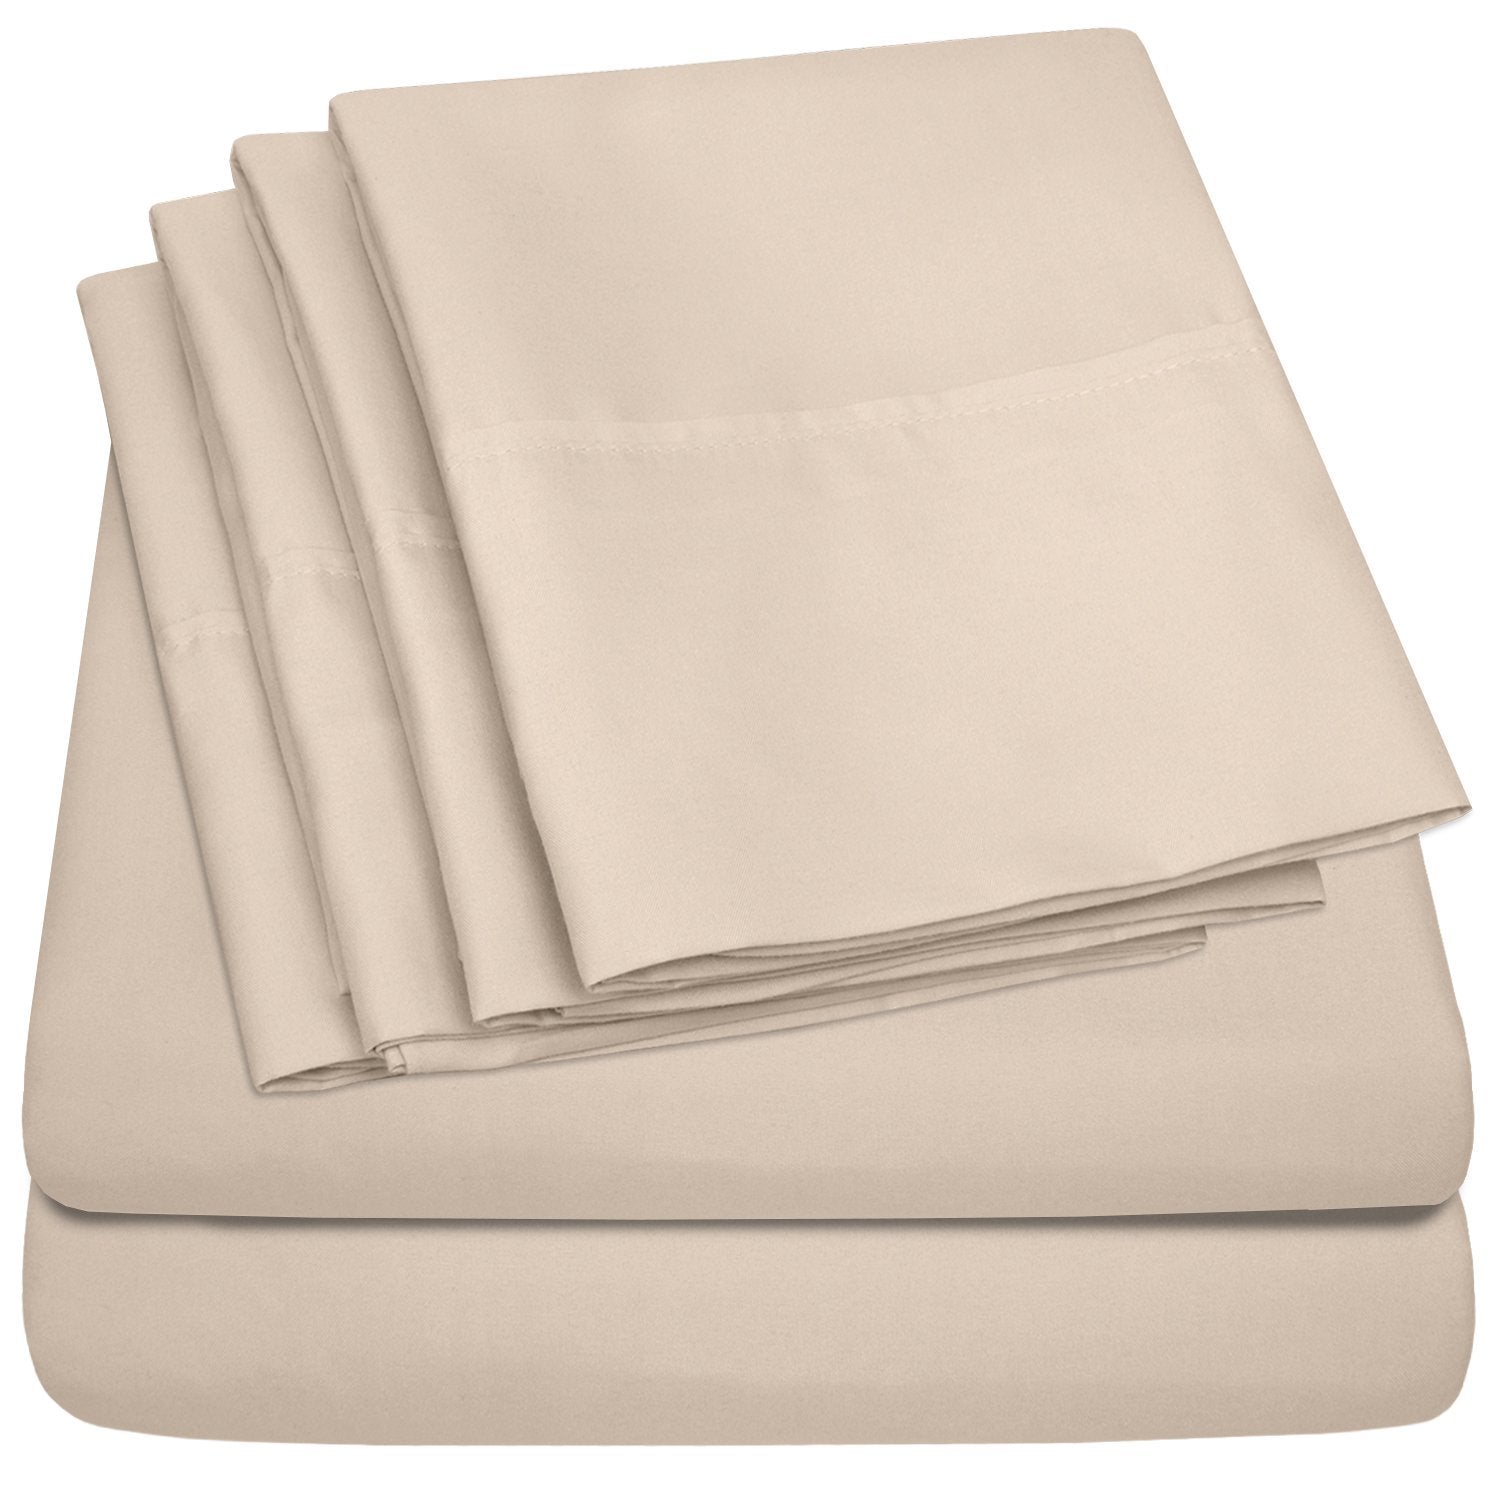 Deluxe 6-Piece Bed Sheet Set (Beige) - Folded